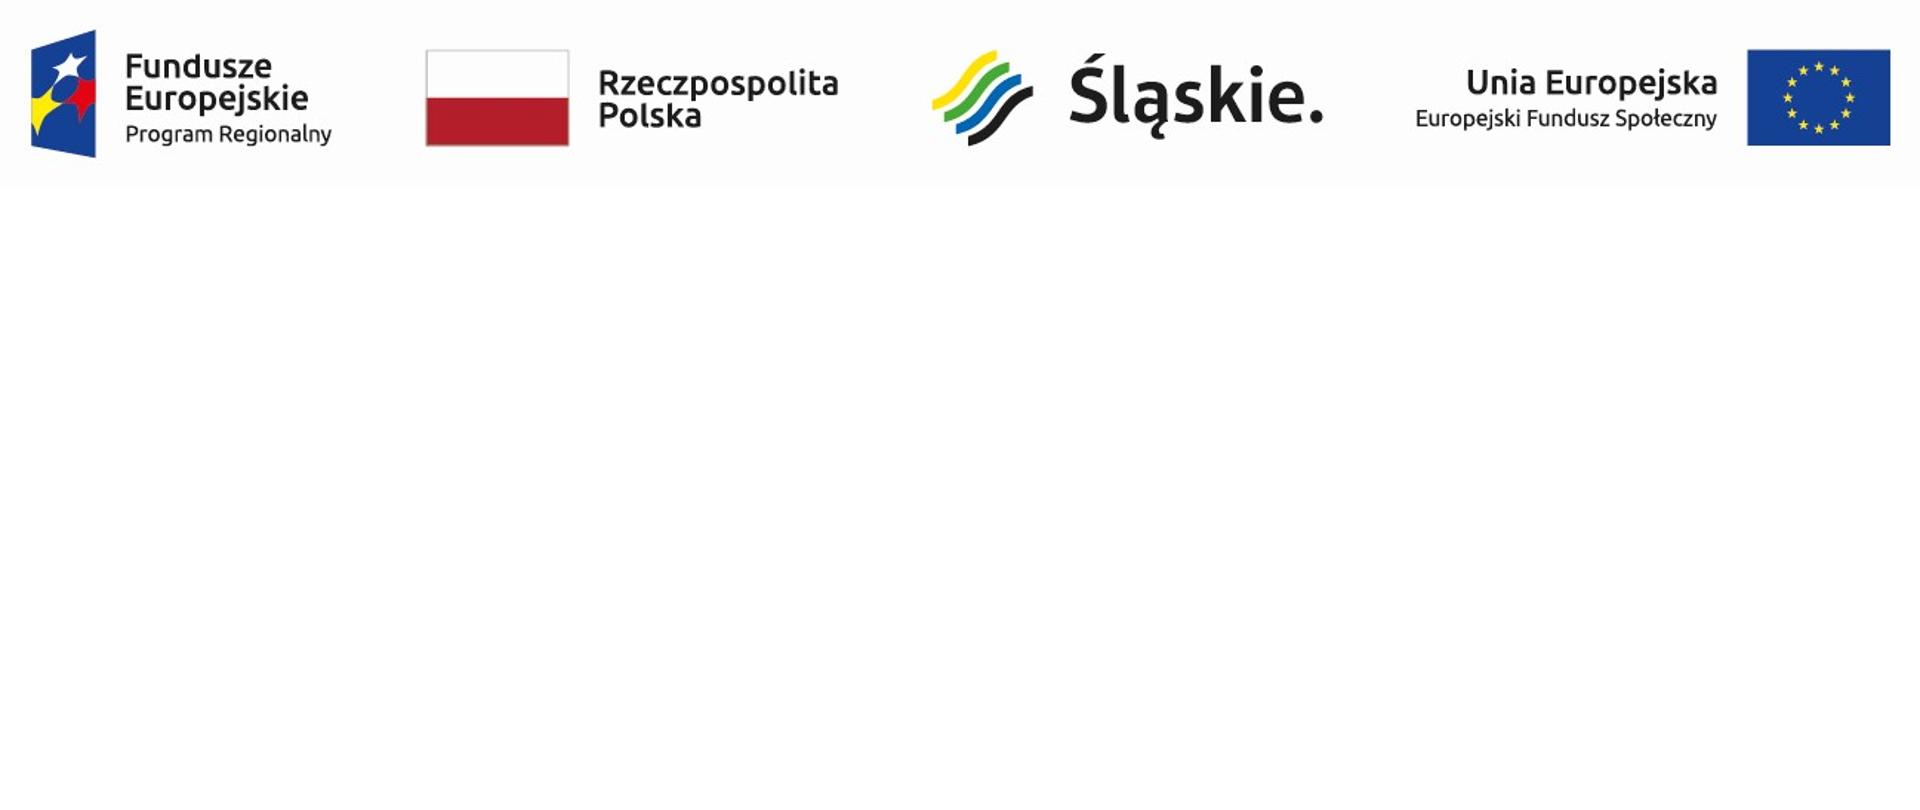 Logotypy: Fundusze Europejskie Program Regionalny, Rzeczpospolita Polska, Śląskie, Unia Europejska Europejski Fundusz Społeczny